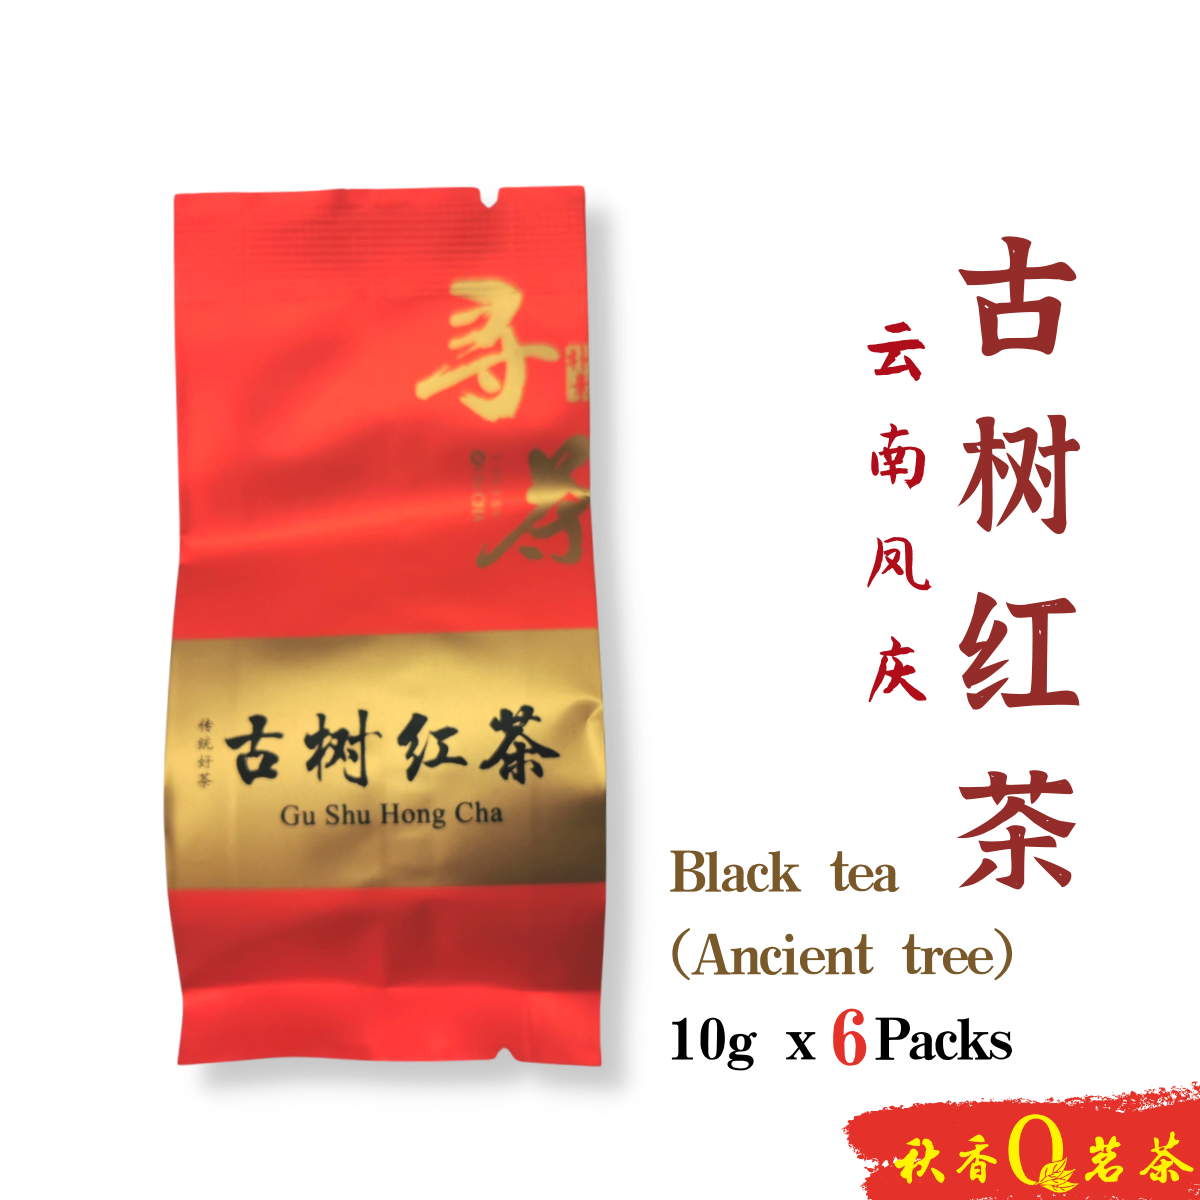 古树红茶 Black Tea (Ancient Tree) 【6 Packs x 10g】|【红茶 Black tea】